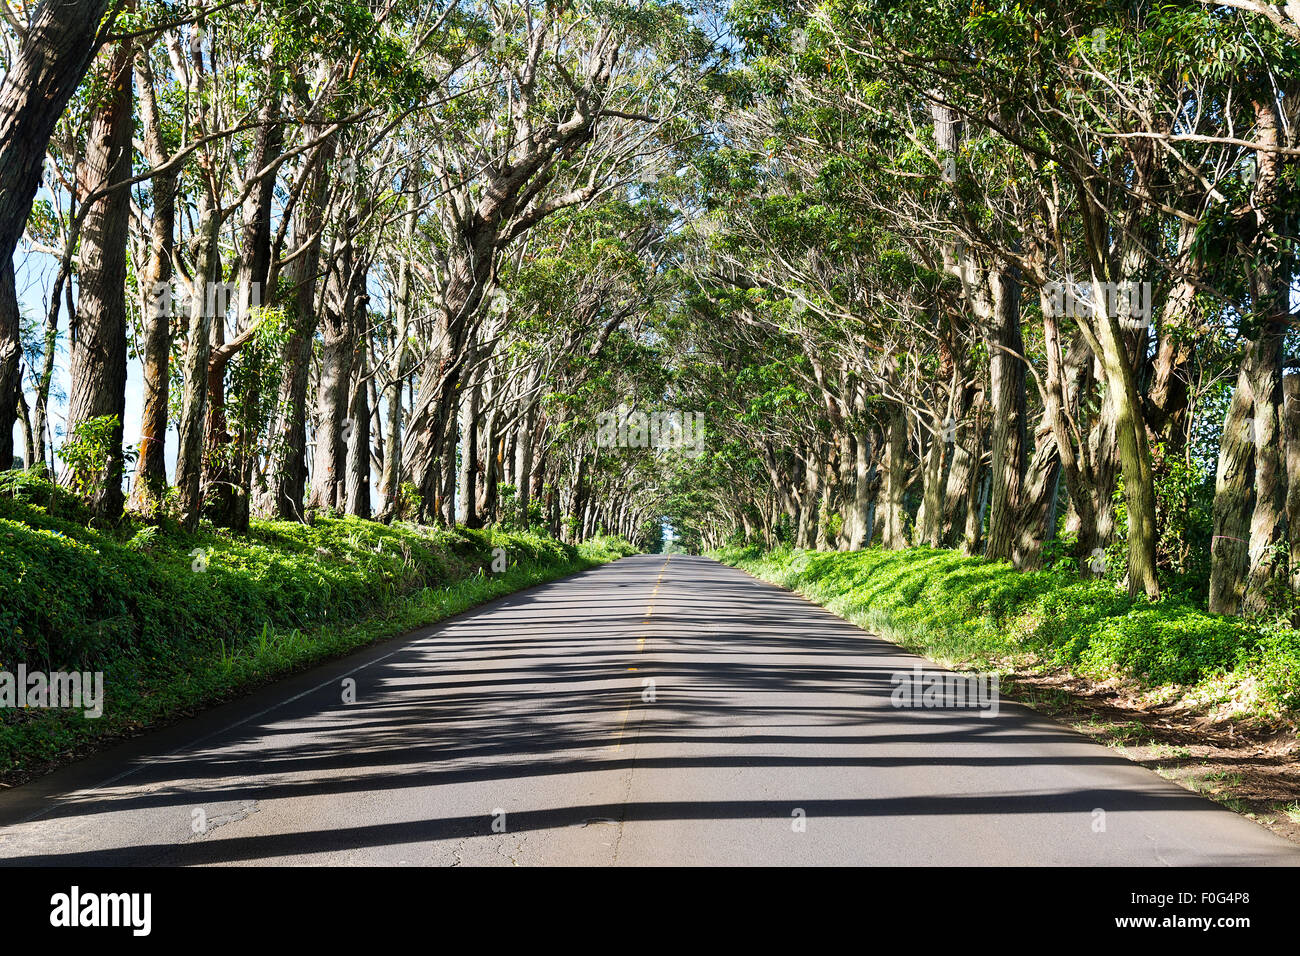 Un famoso punto di riferimento in Kauai Hawaii è un lungo tunnel di alberi in una zona rurale dell'isola. Foto Stock